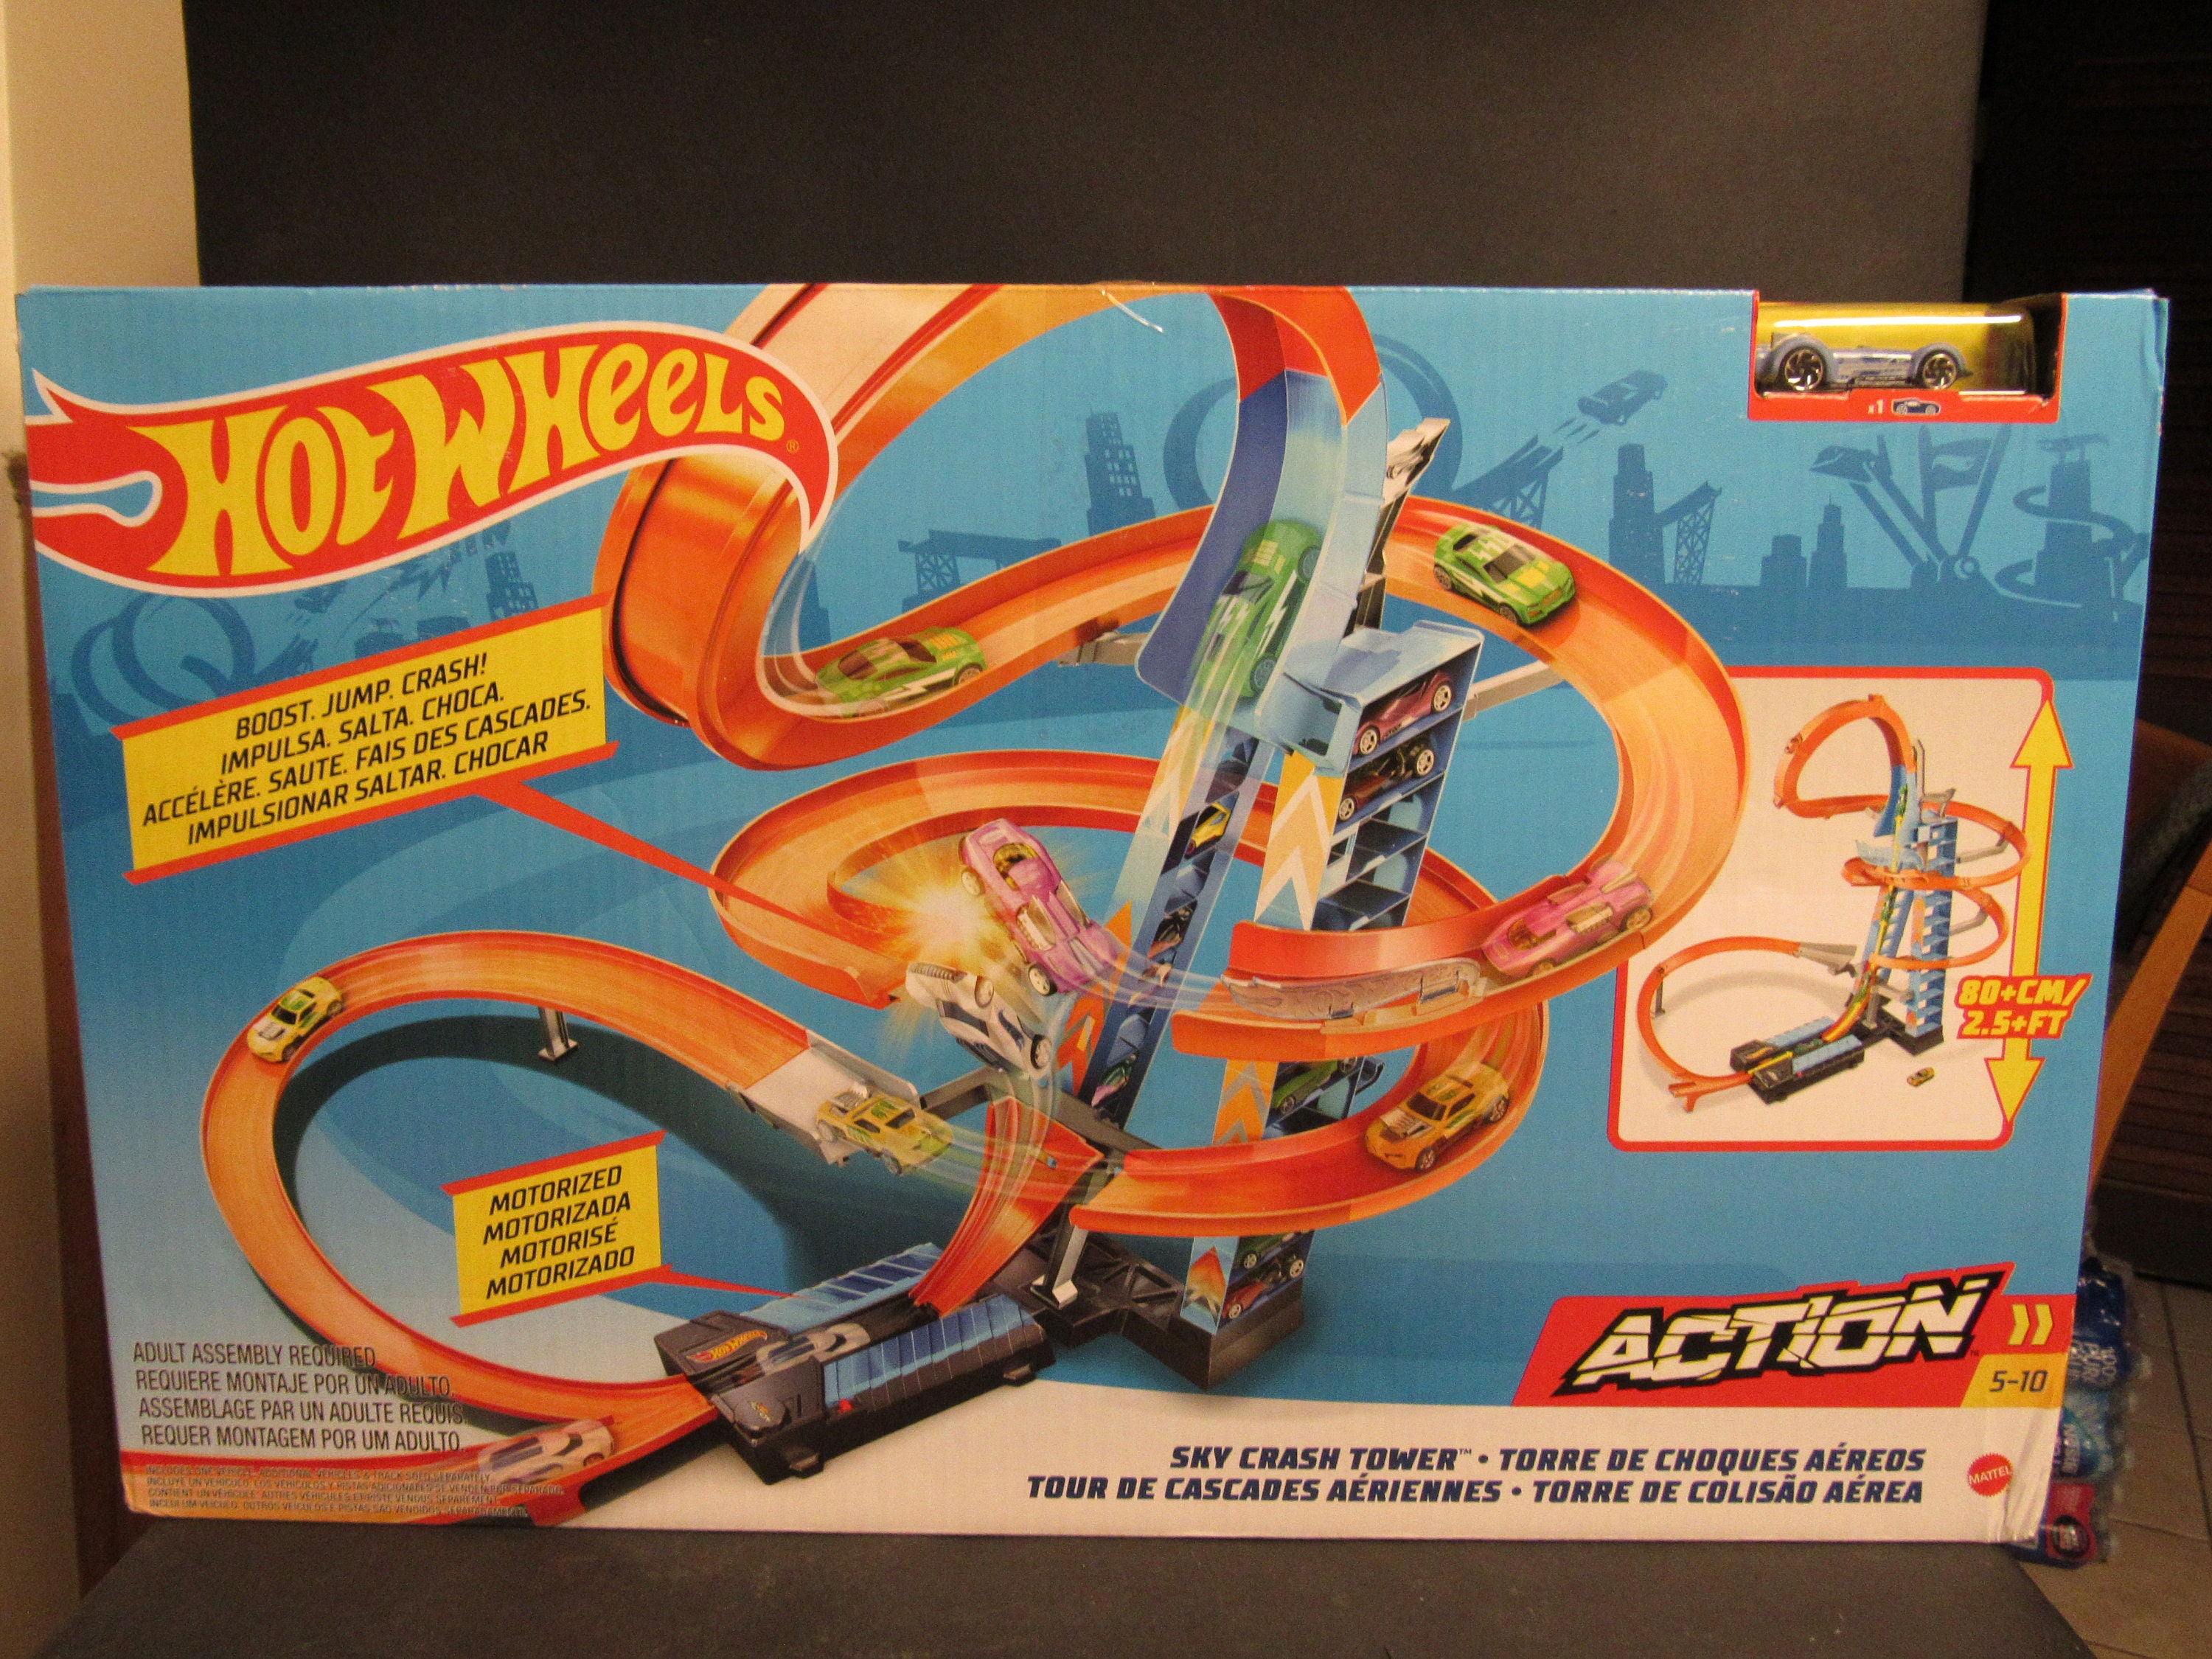 Hot Wheels City Deadman's Curve Track Set - EUC - Mattel 2014